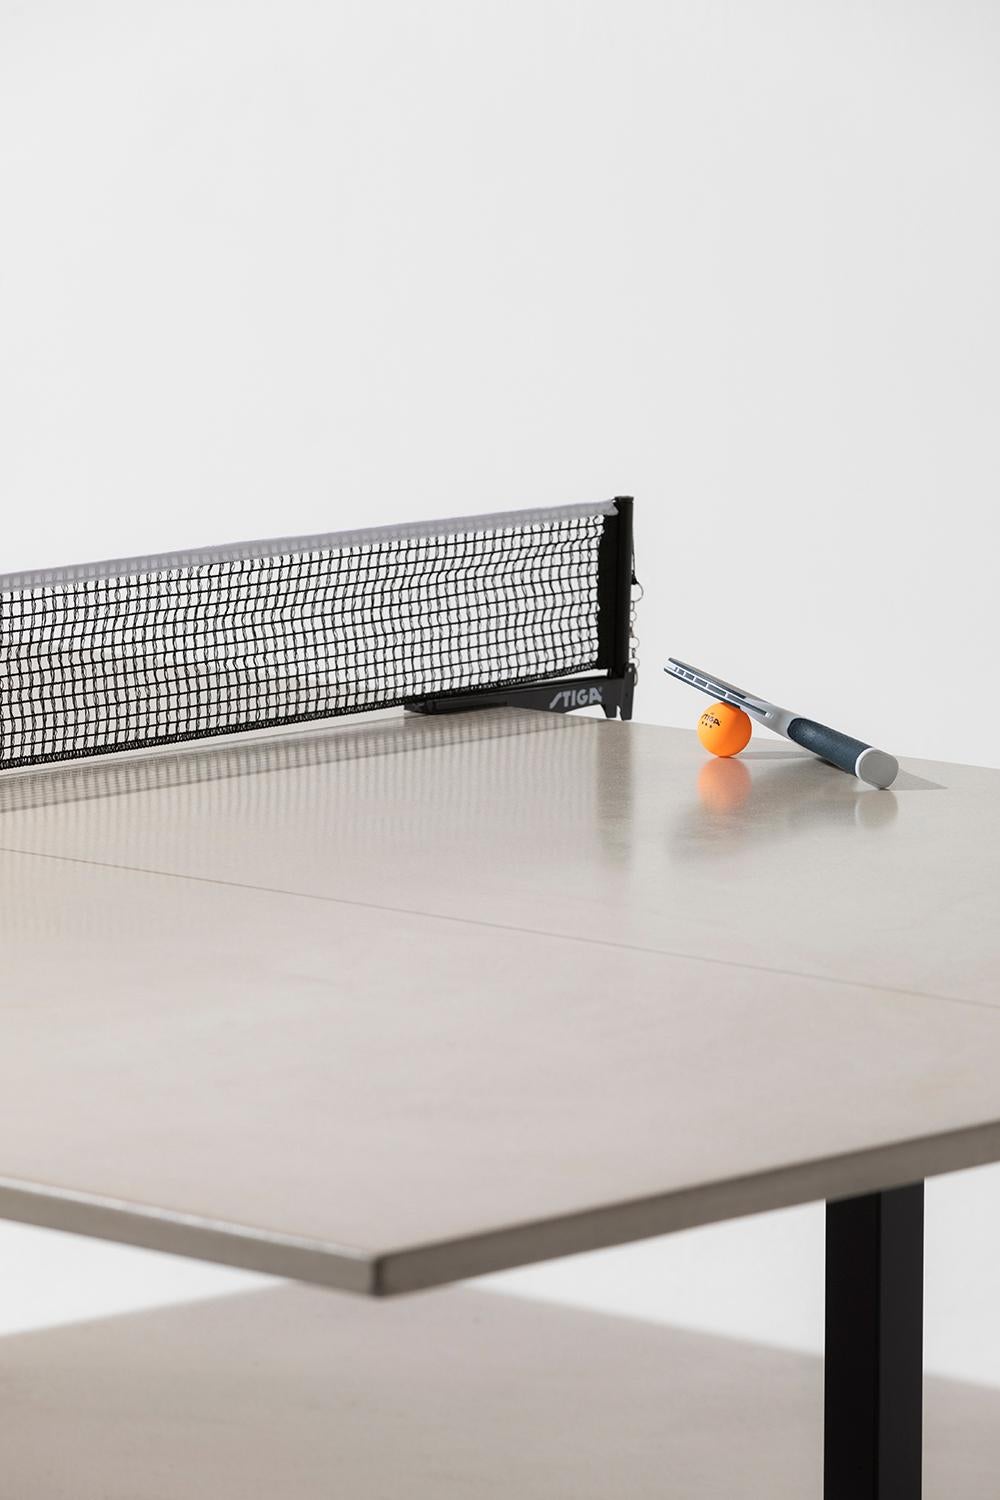 Acier Table de ping-pong Vue en béton, base en acier revêtu de poudre James de Wulf, standard en vente